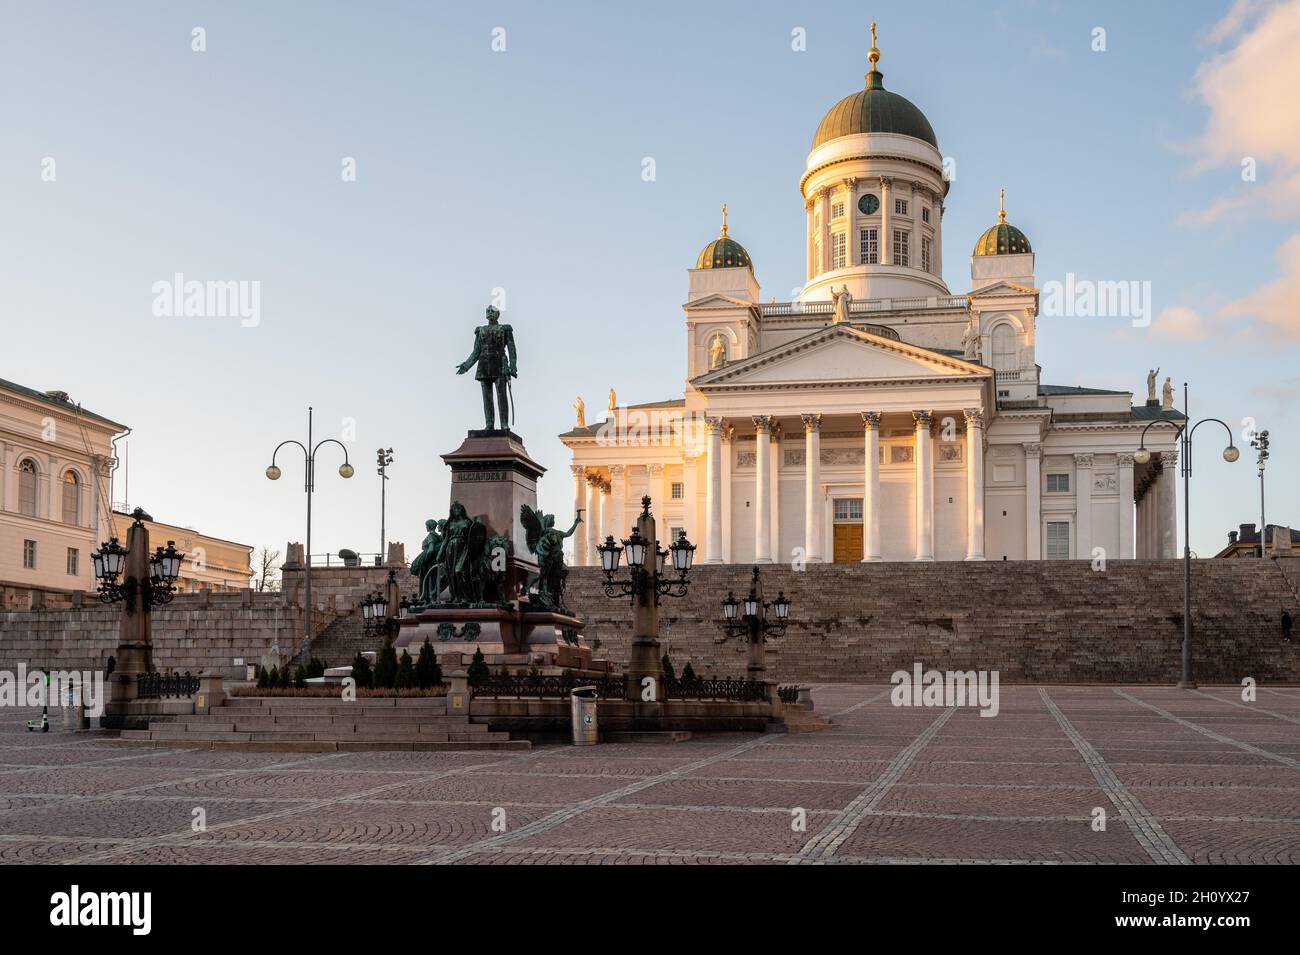 Helsinki / Finlande - 14 MARS 2020 : cathédrale d'Helsinki au sommet d'une colline au coucher du soleil.Place du Sénat et statue d'Alexandre au premier plan. Banque D'Images